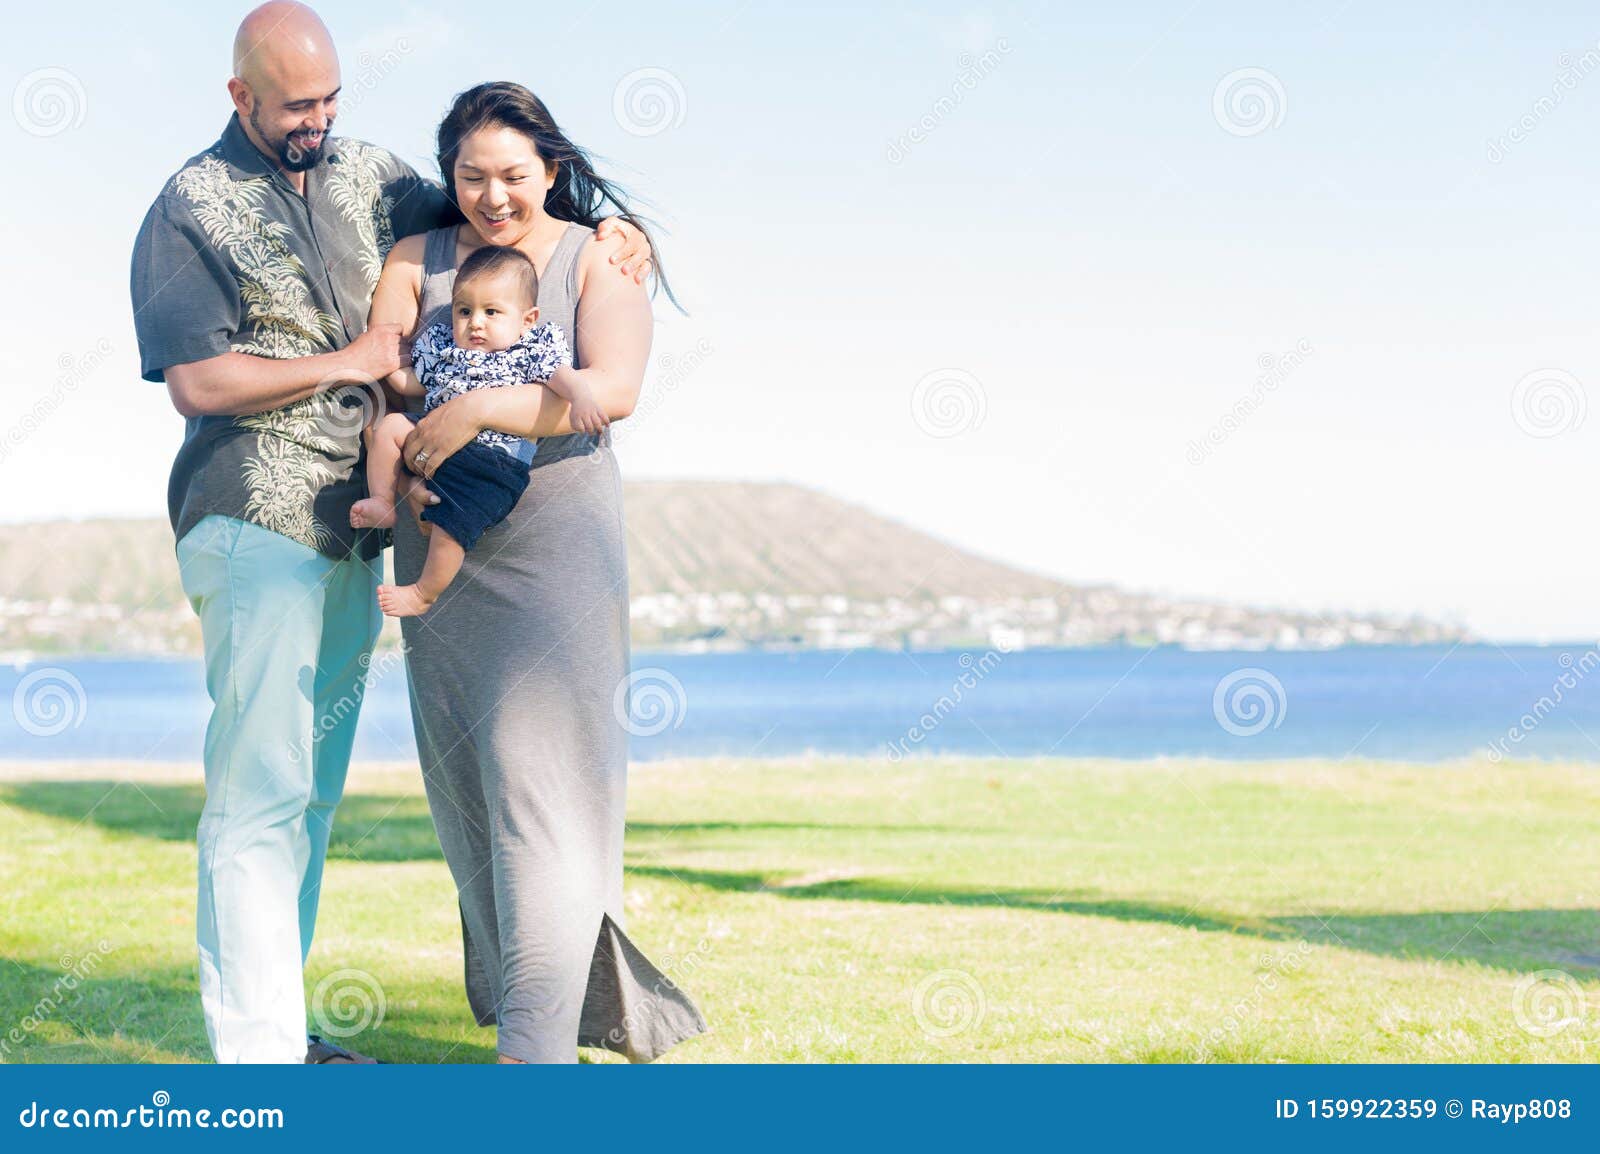 Glad familjeporträtt på stranden. Fader och mor som håller sitt barn på stranden utomhus tillsammans, porträtt